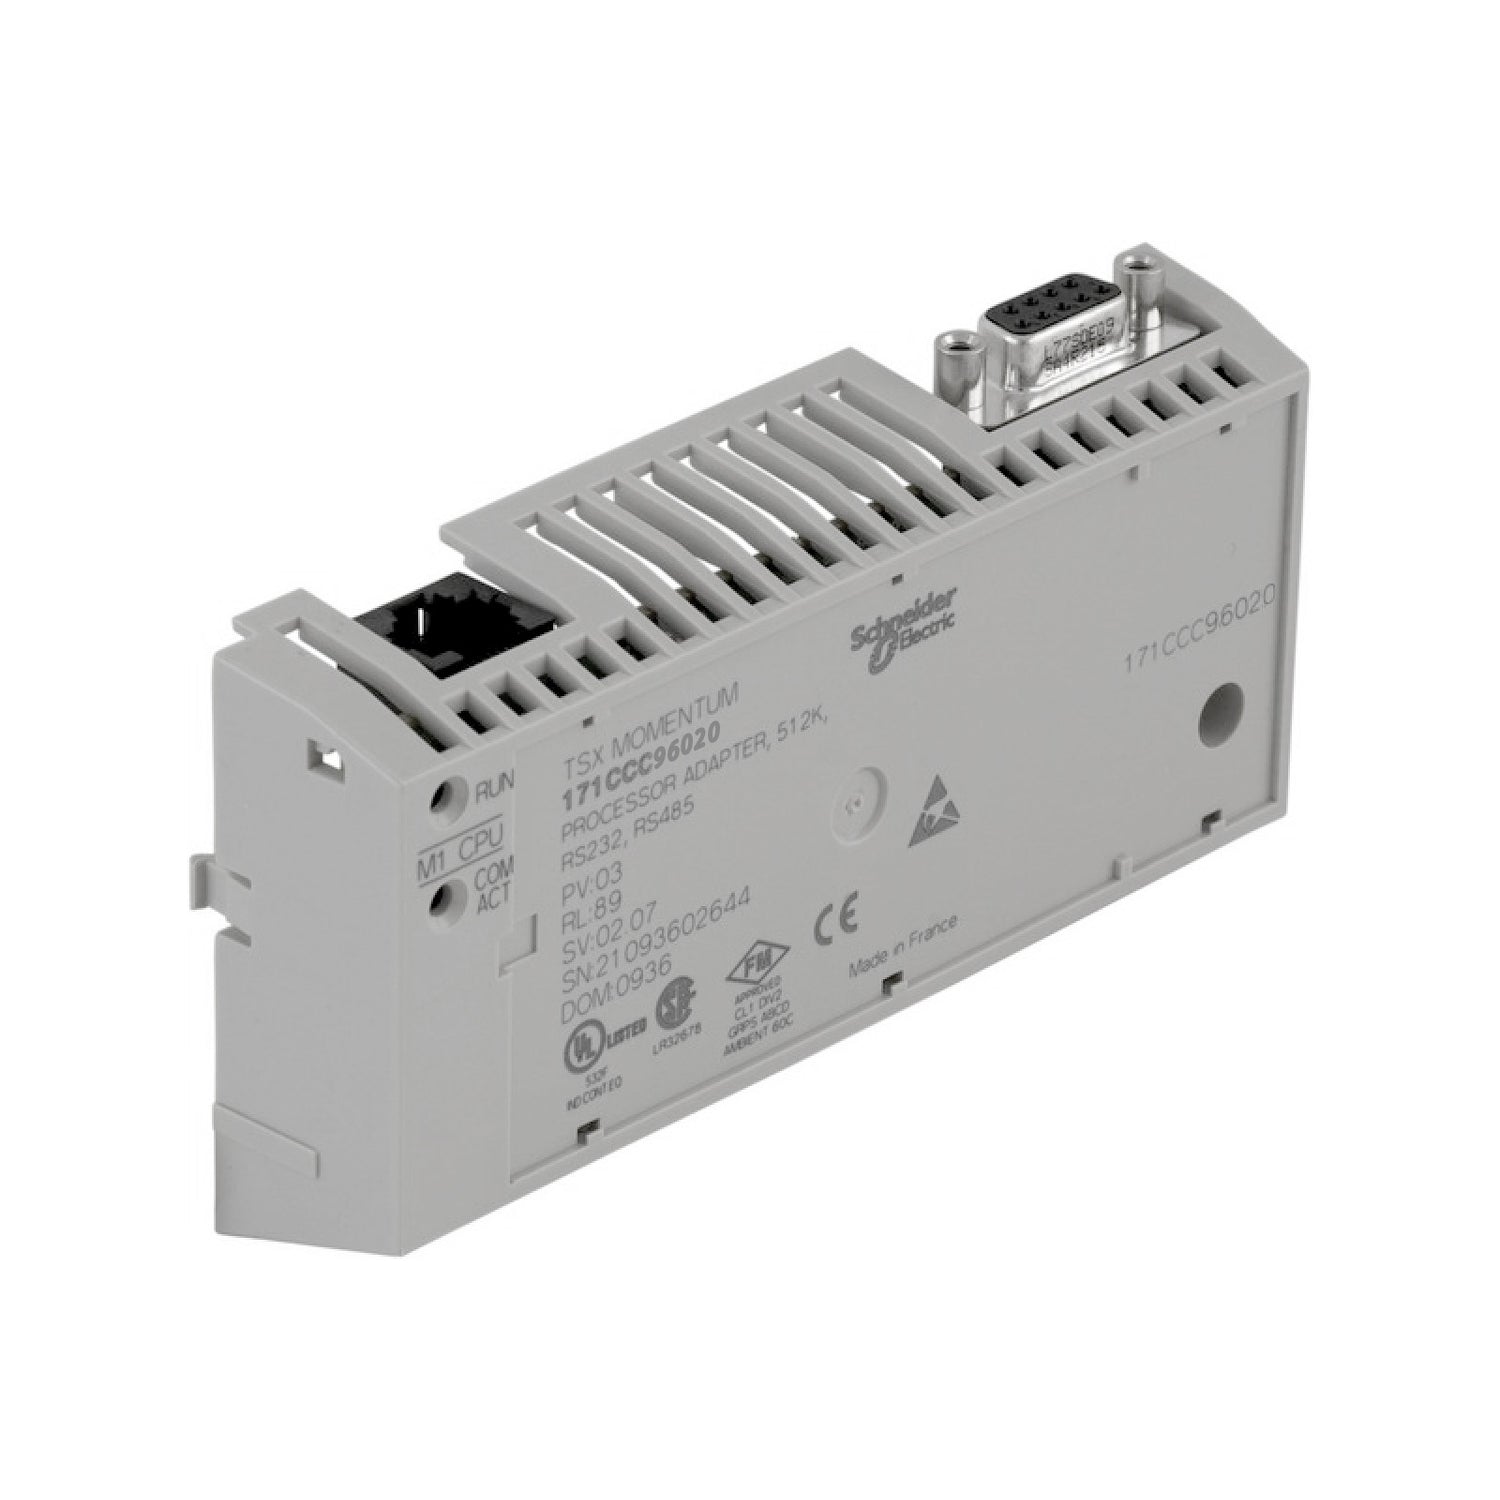 171CCC96020 | Schneider Electric M1/M1E processor adaptor - 1 Ethernet, 1 I/O bus - 50 MHz